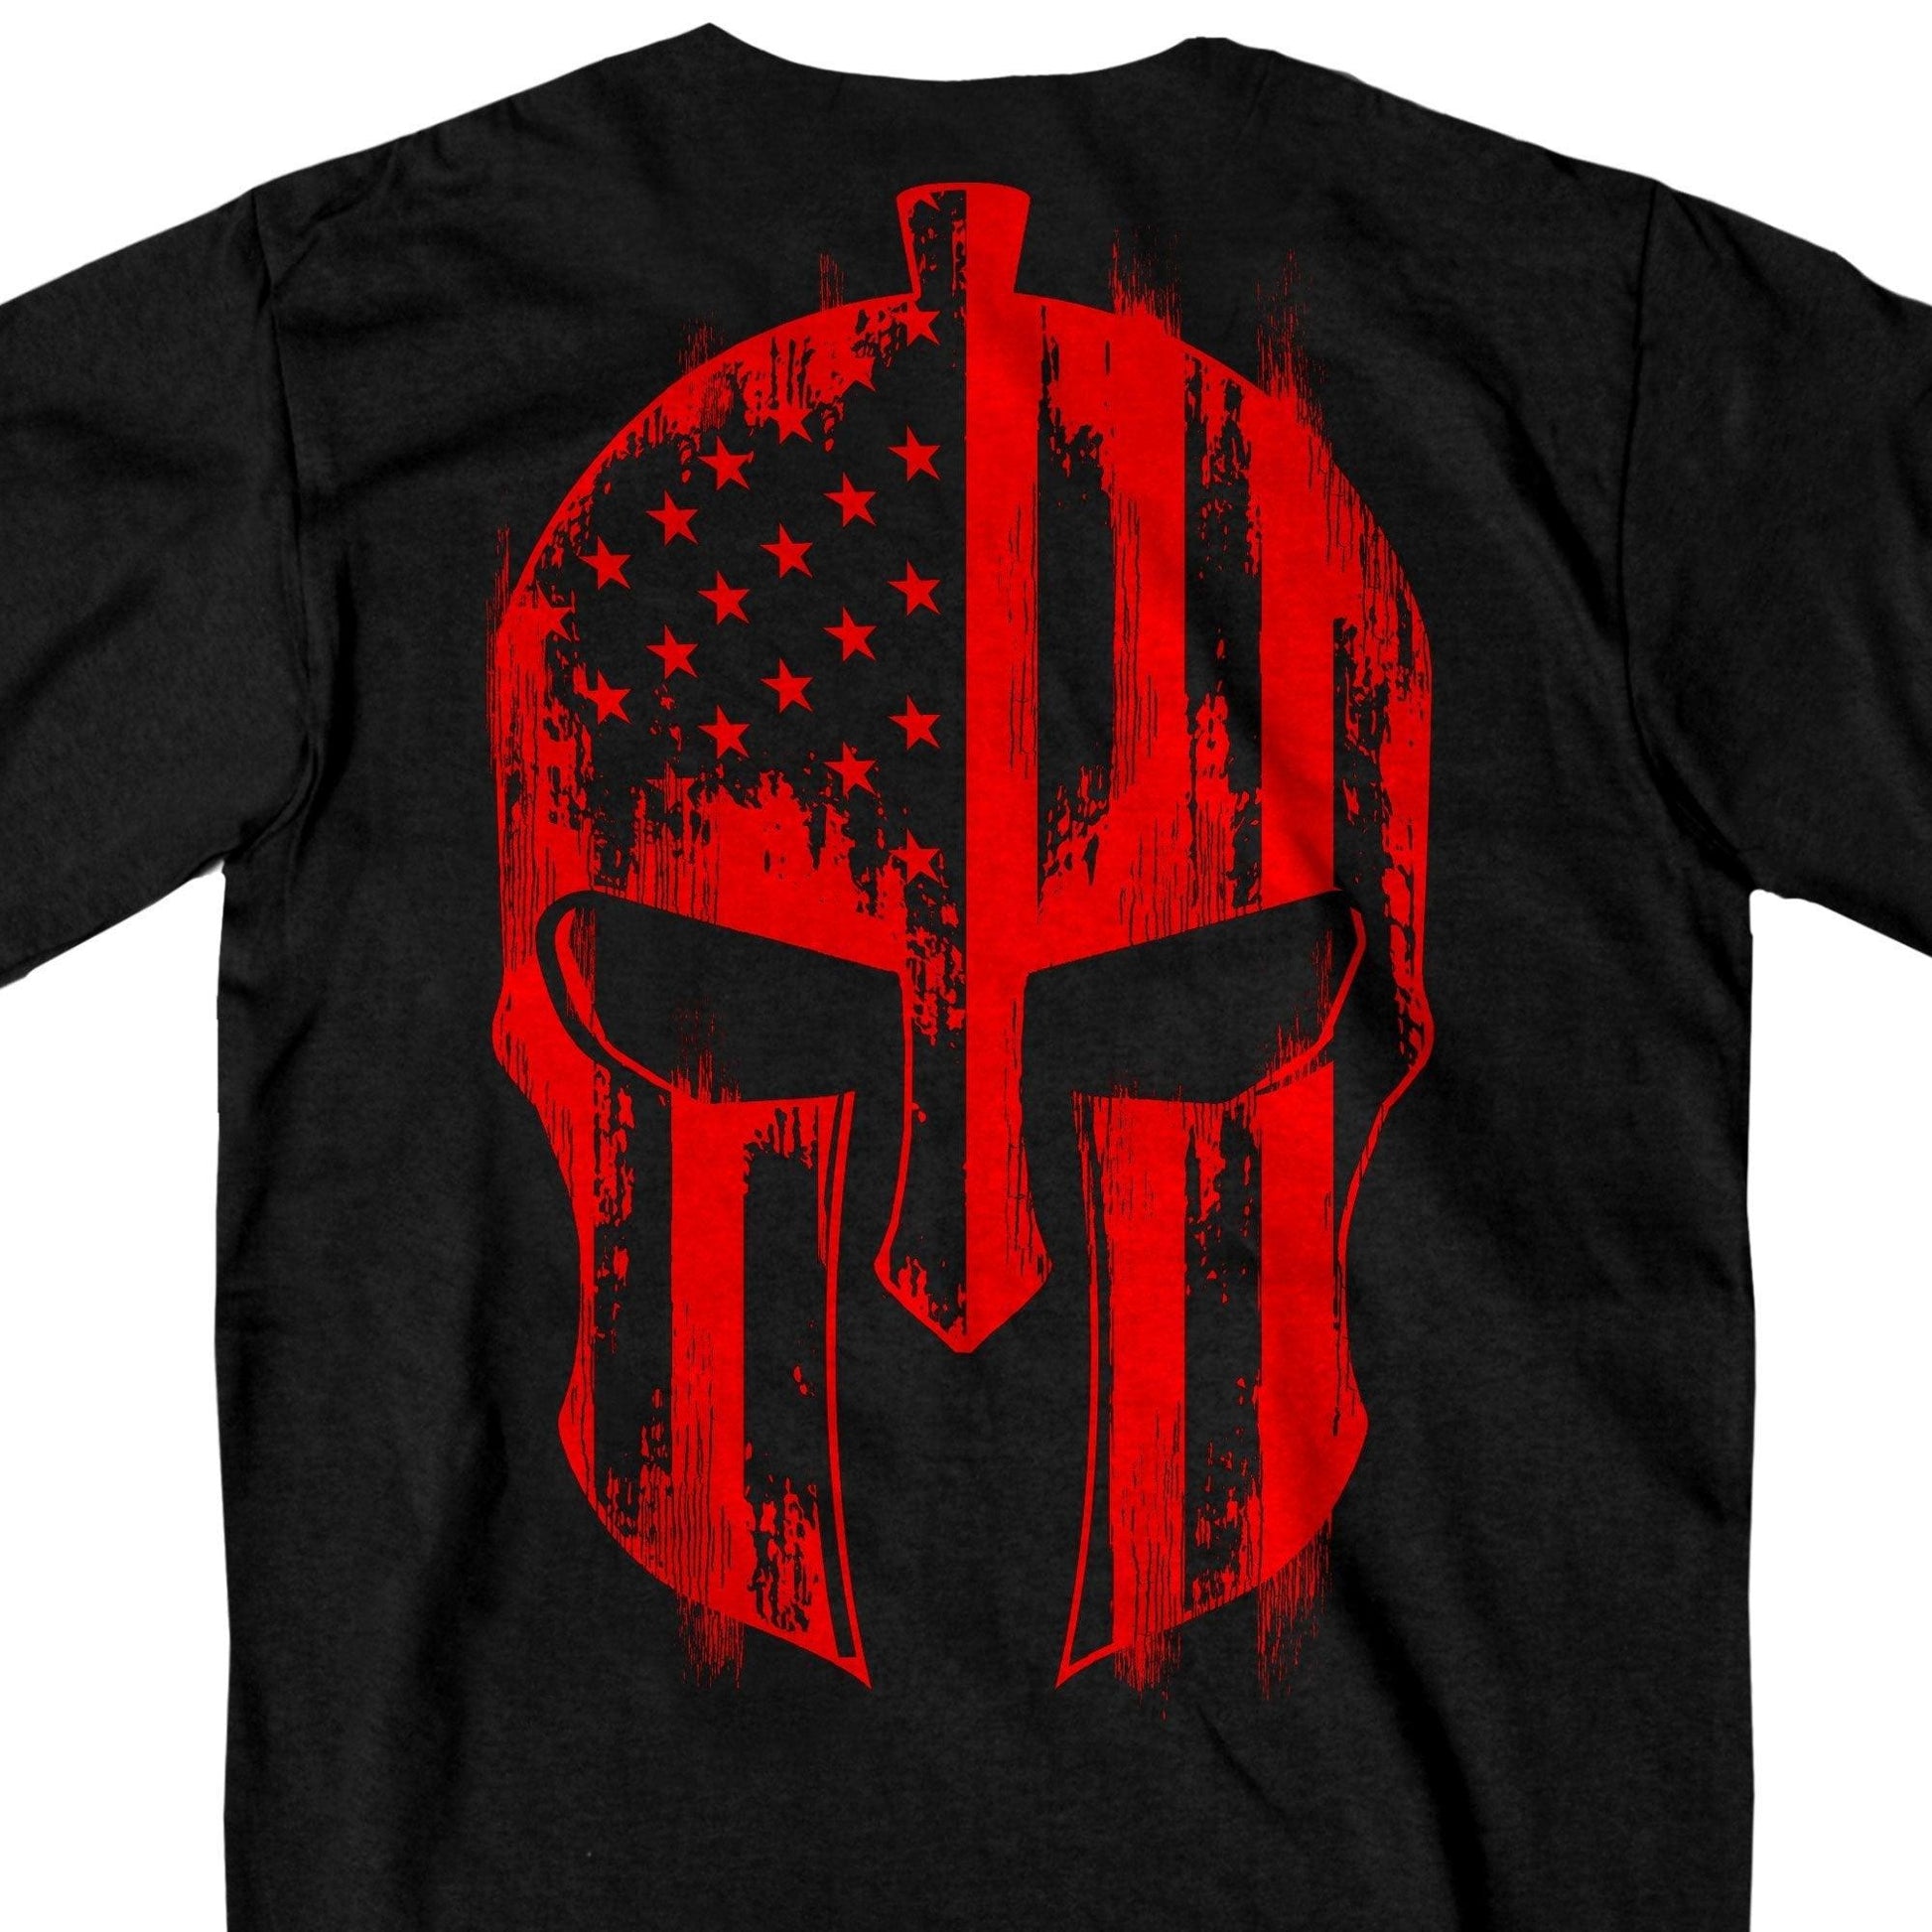 Red Skull Flag Warrior Biker T-shirt - Military Republic